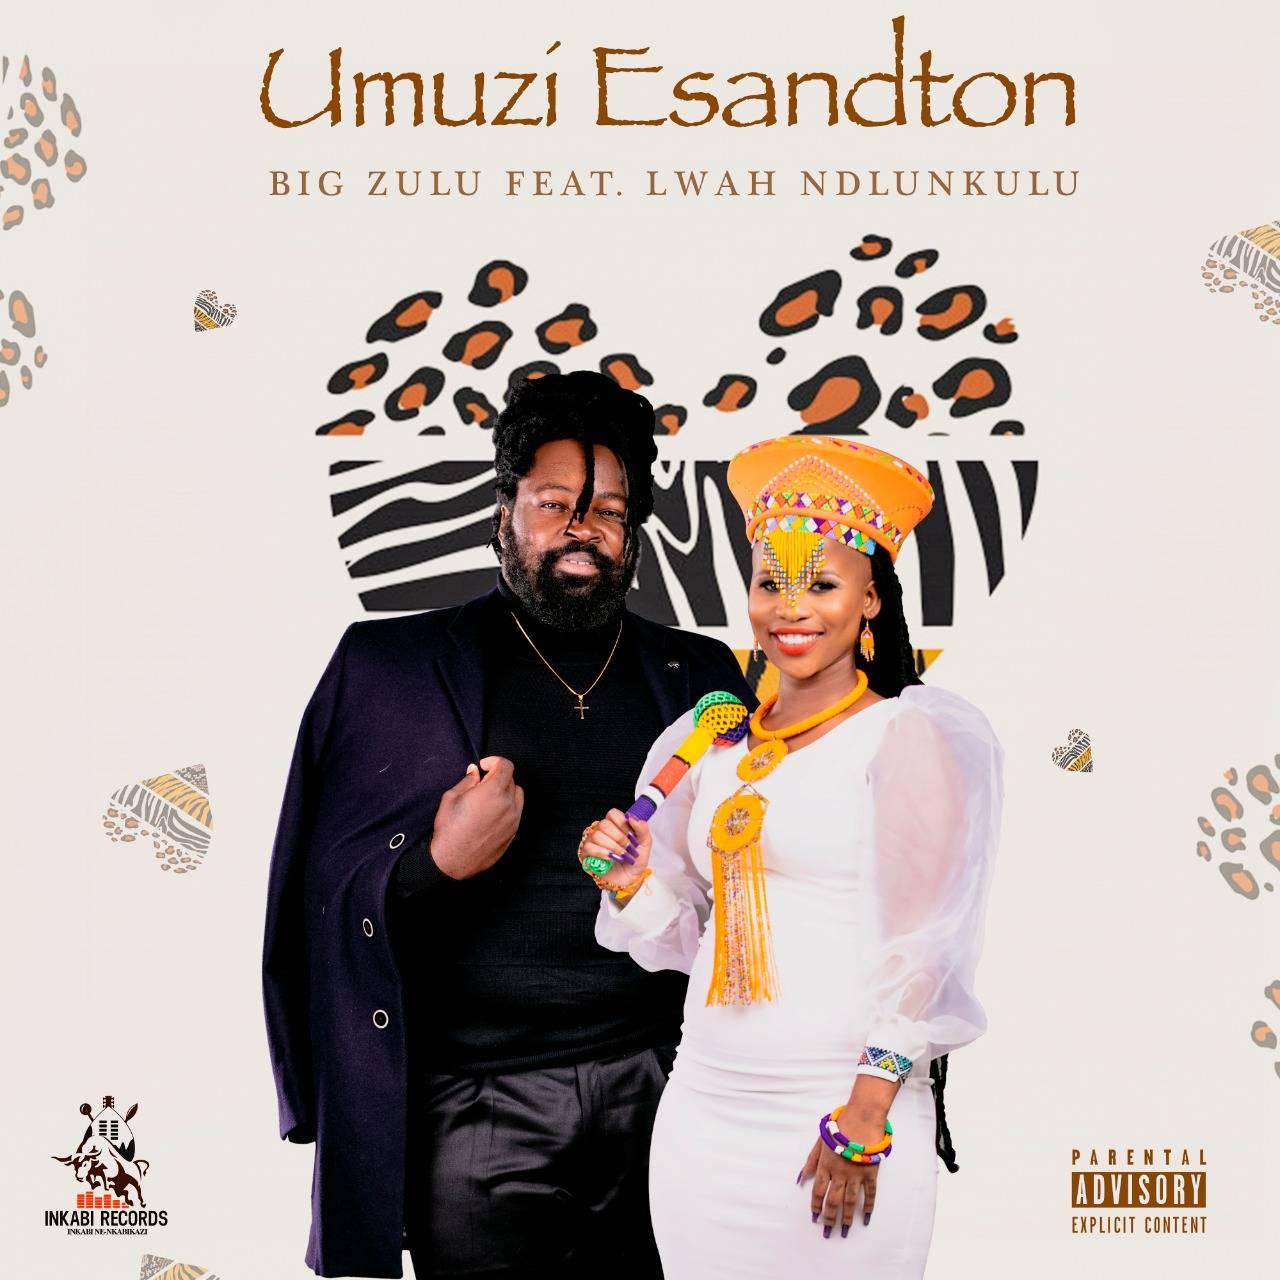 Big Zulu Umuzi eSandton Lyrics (Ft. Lwah Ndlunkulu) AfrikaLyrics